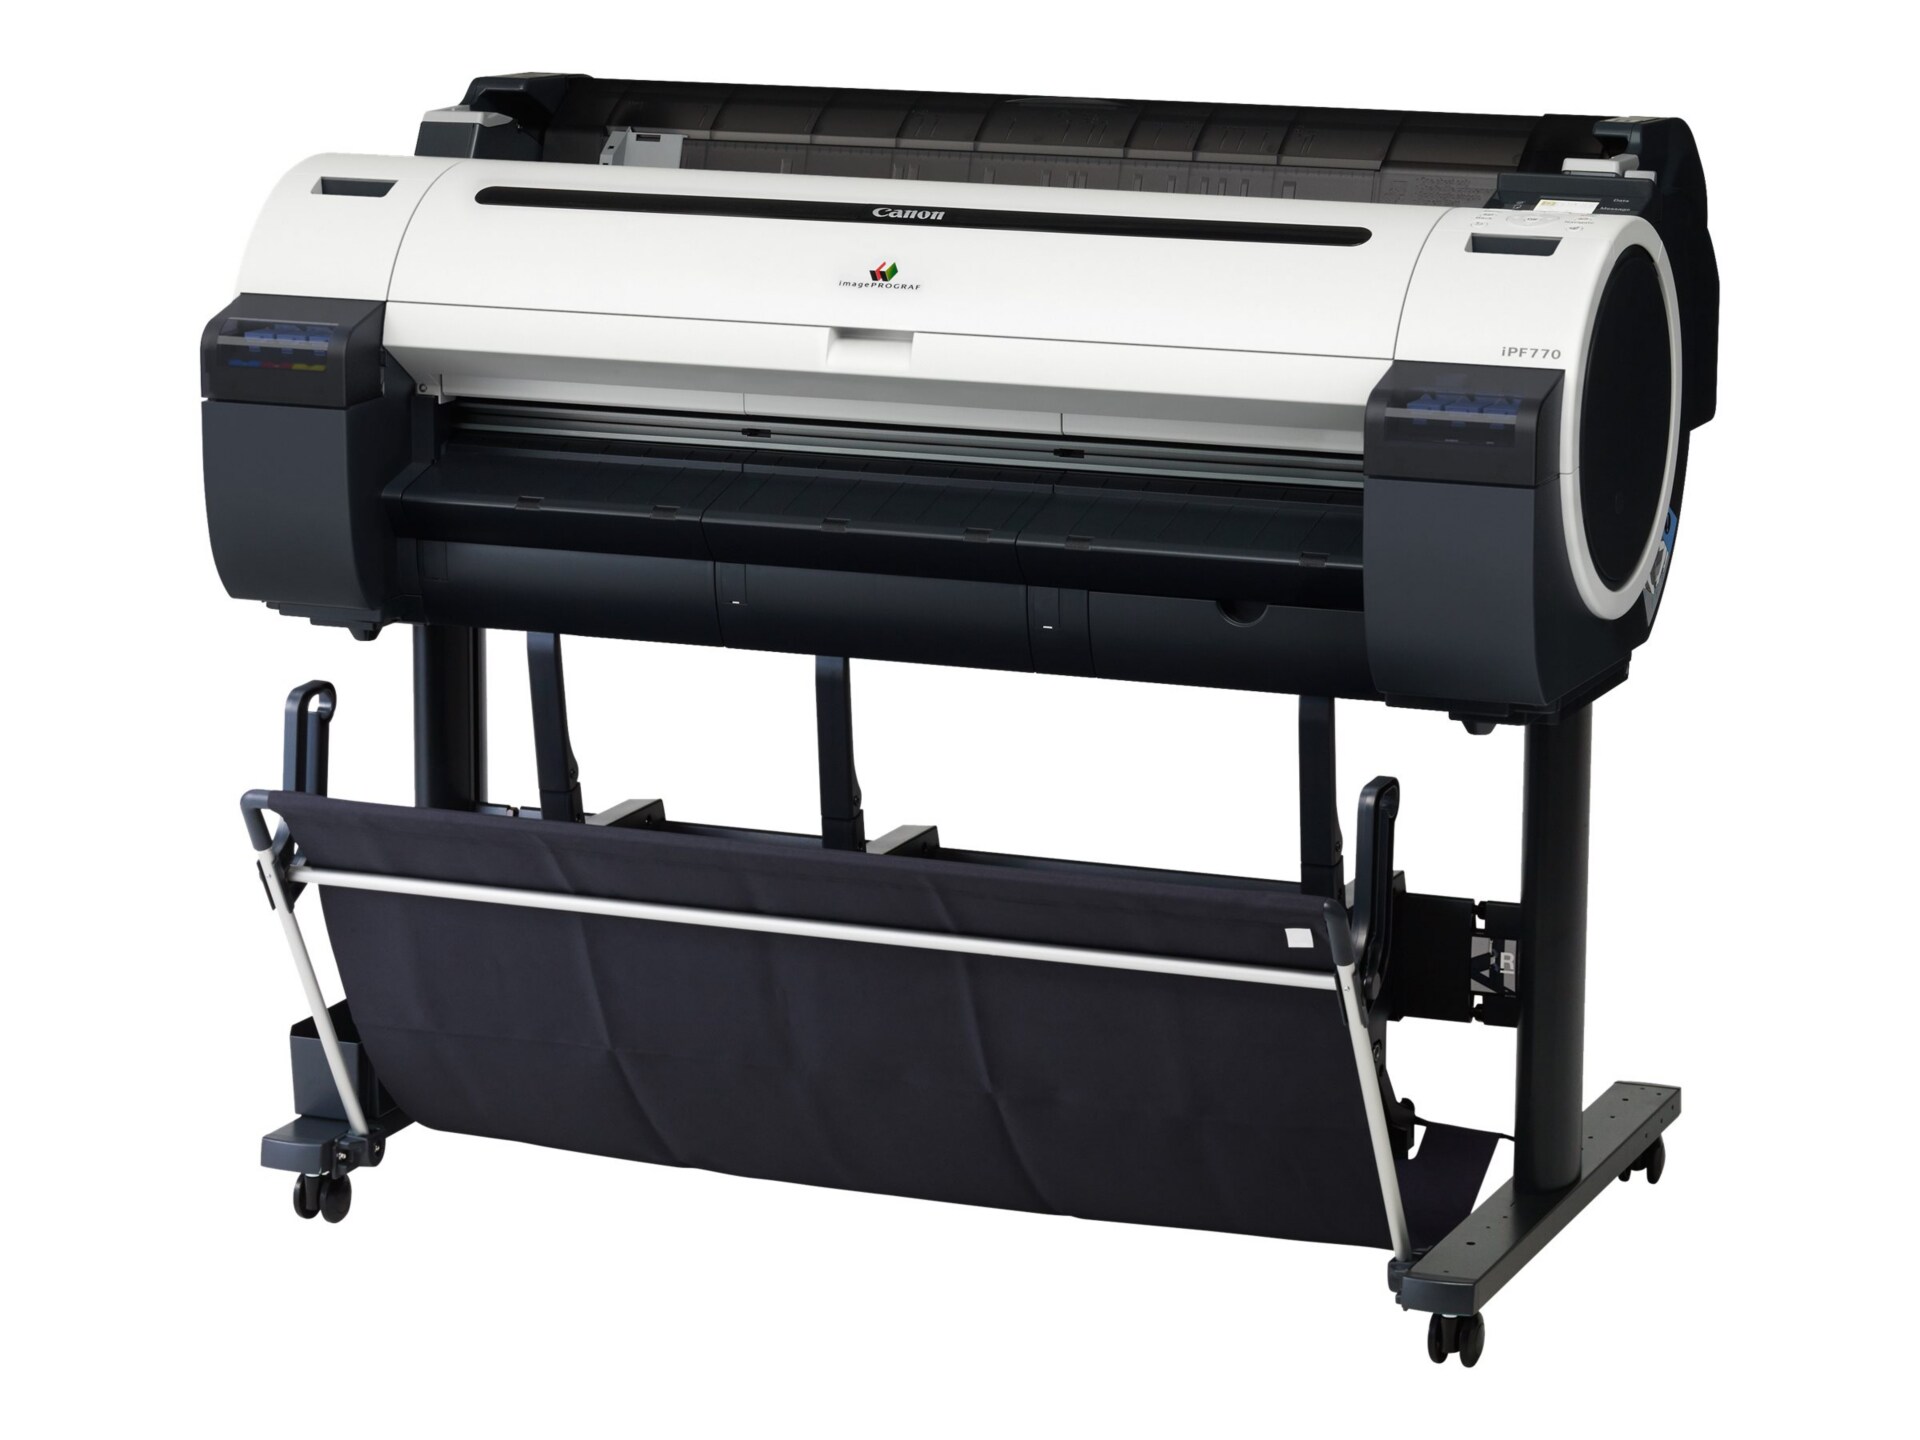 Canon imagePROGRAF iPF770 - large-format printer - color - ink-jet